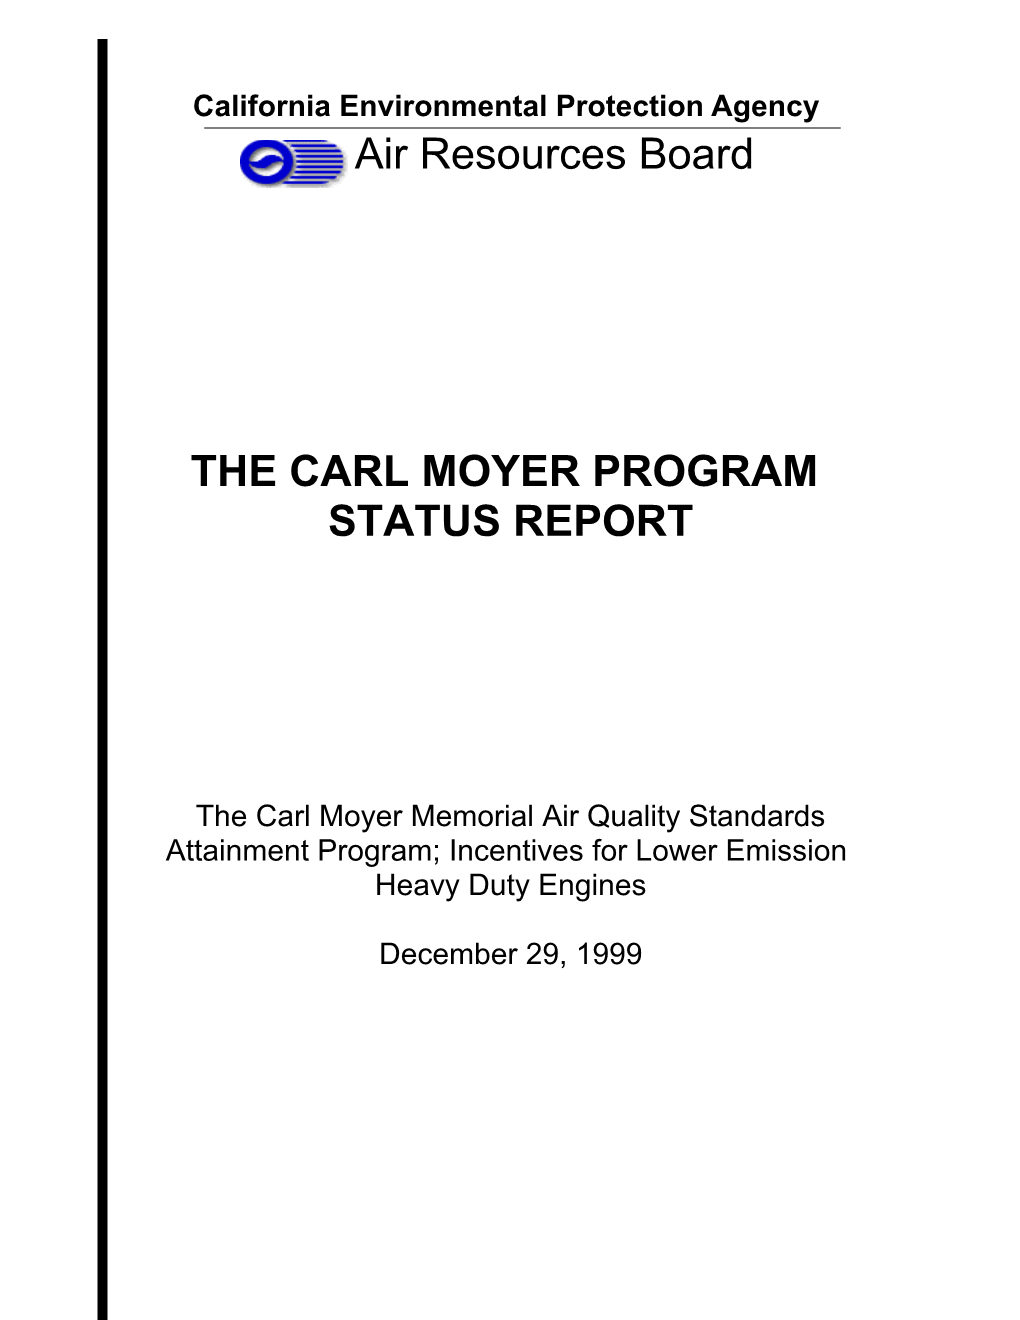 The Carl Moyer Program